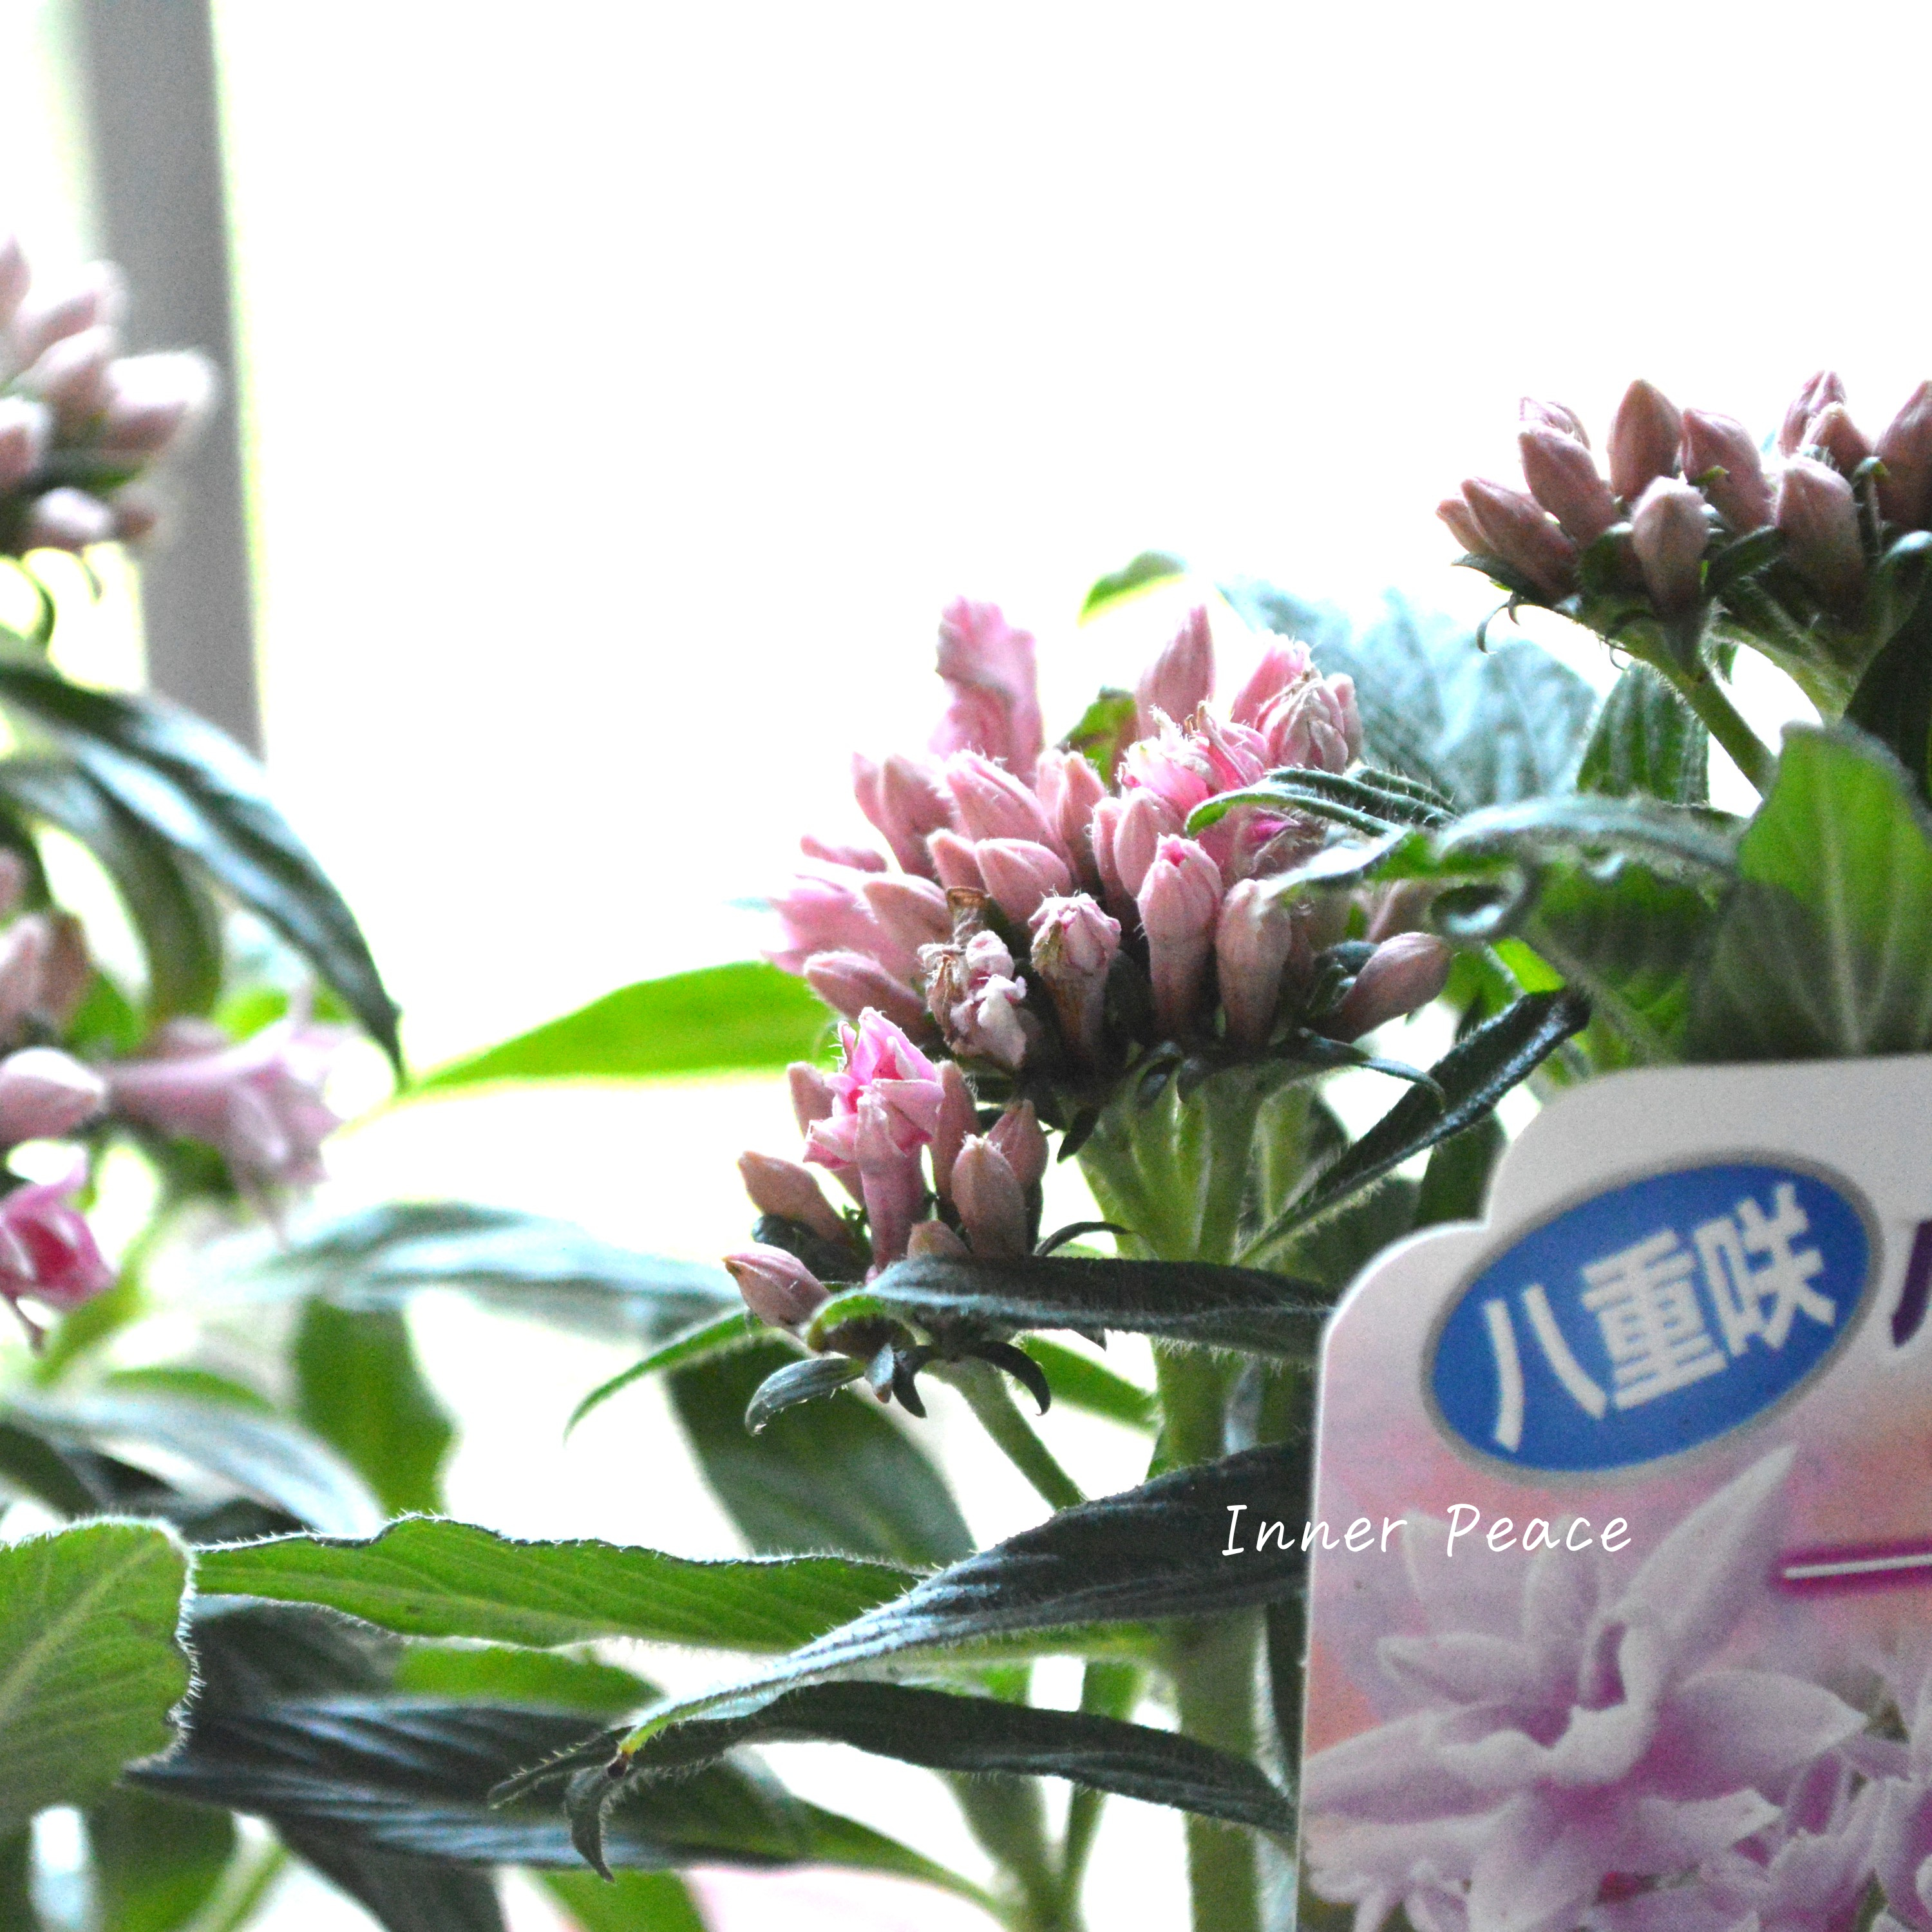 【暑さに強い】 八重咲きペンタス 『ライカ・ピンク』　3.5寸POT